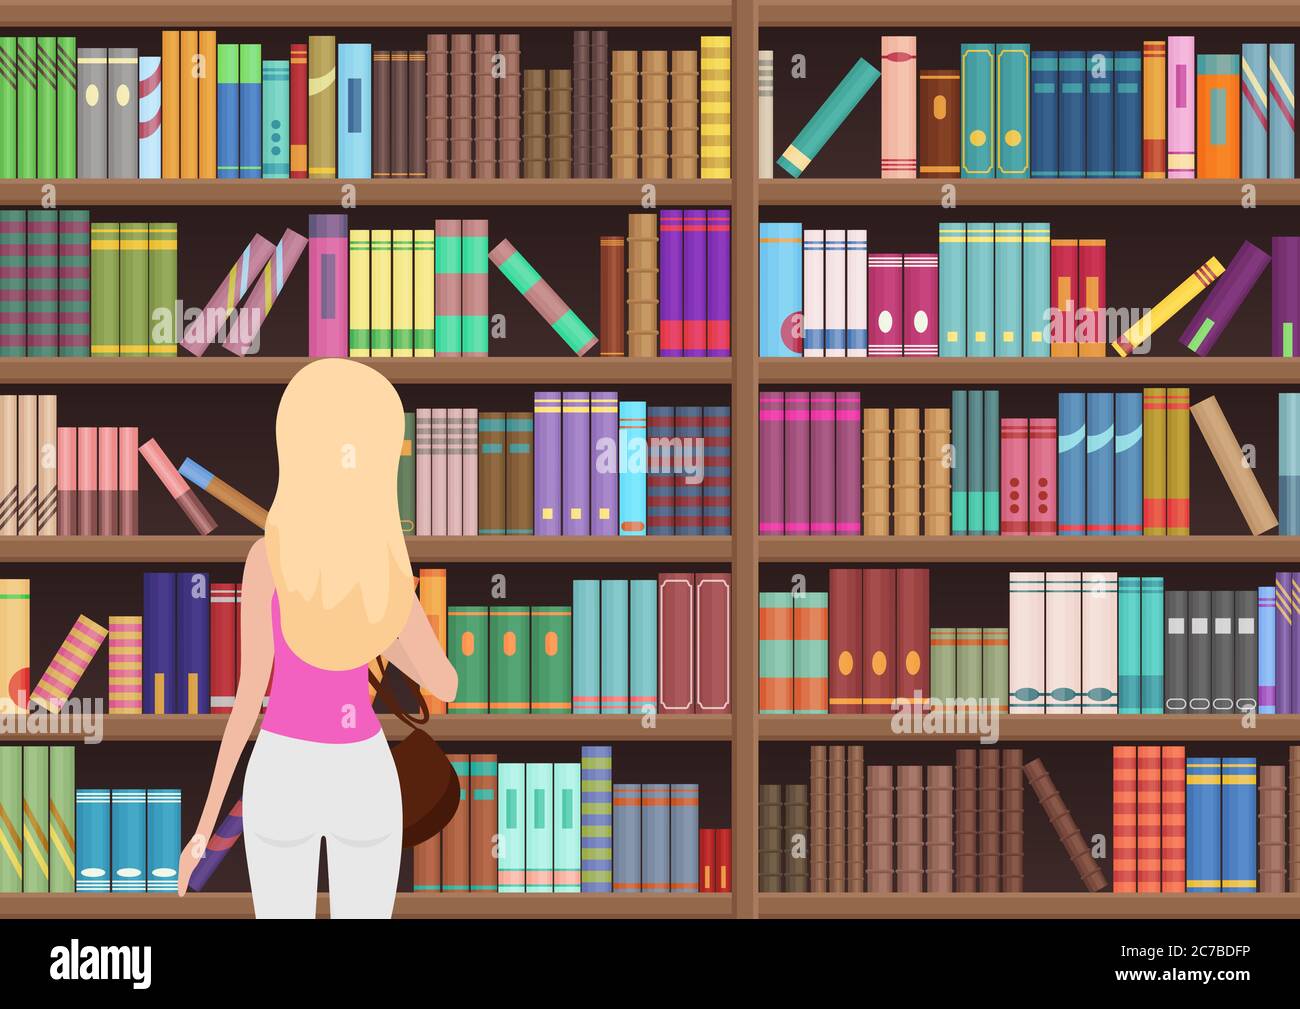 Junge hübsche blonde Frau wählt ein Buch in der Bibliothek. Vektorgrafik Stock Vektor